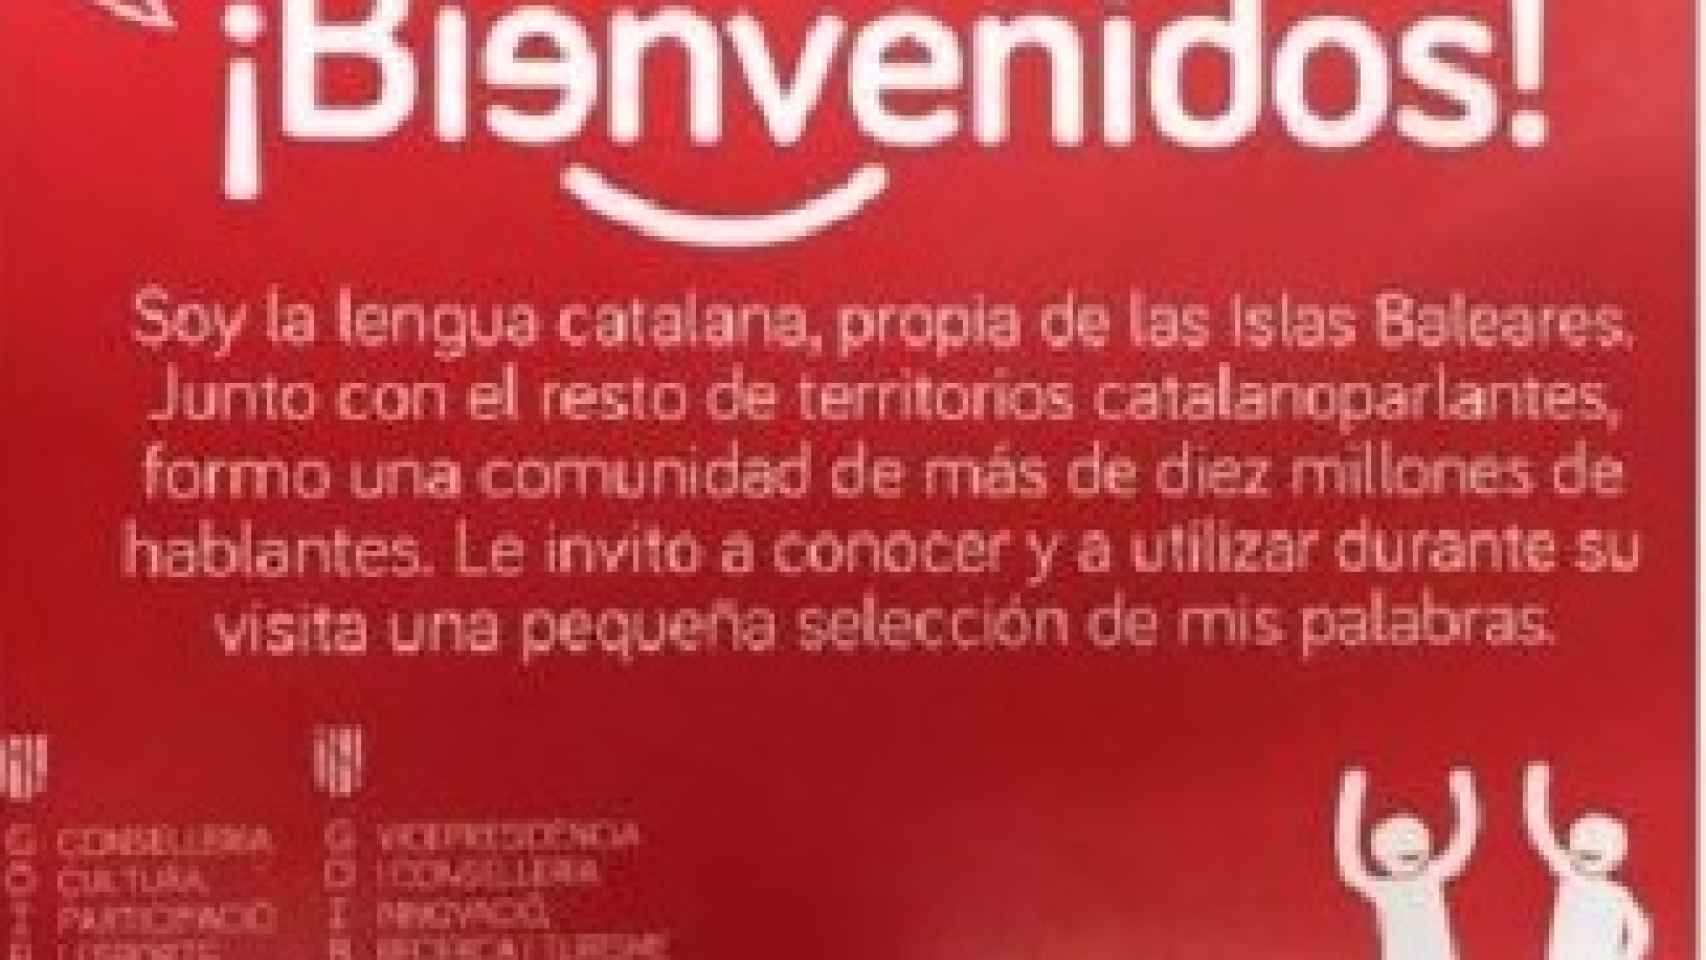 Una de las tarjetas repartida por el Govern en los hoteles para que los turistas aprendan catalán